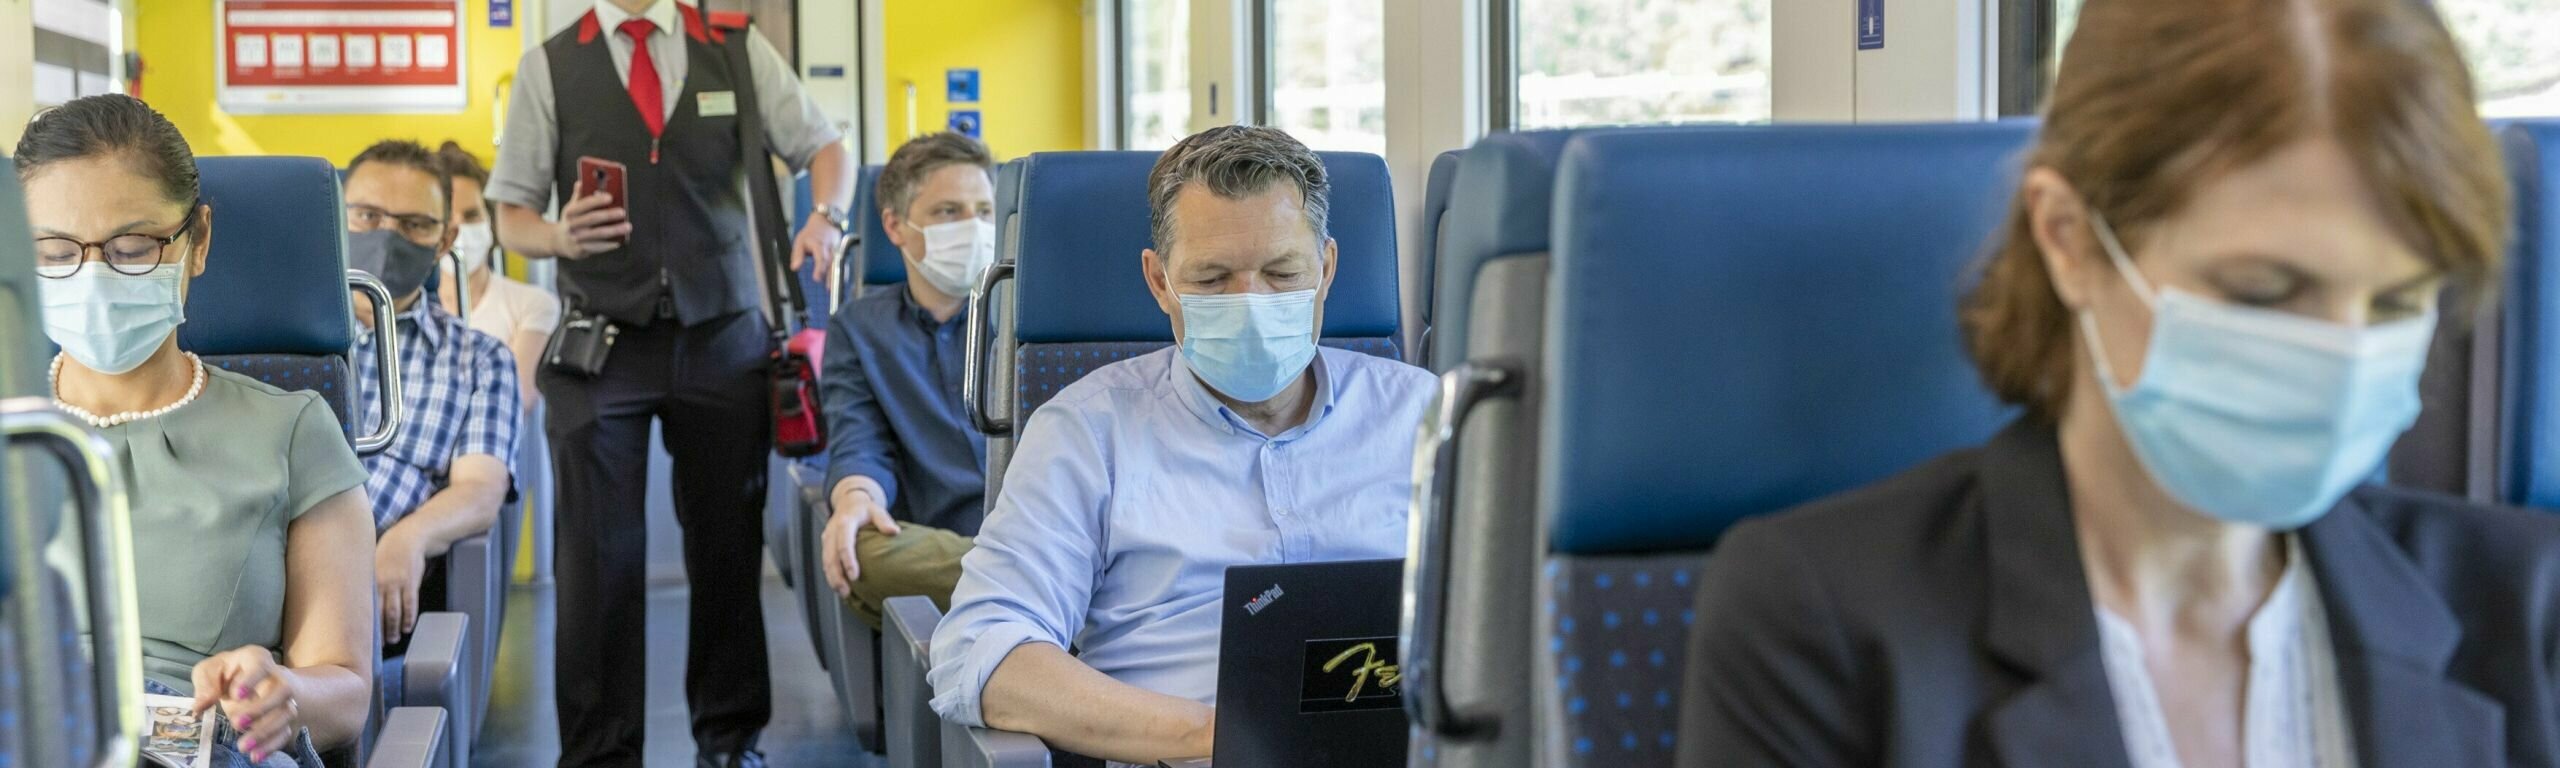 Les clients sont assis dans le train avec des masques.